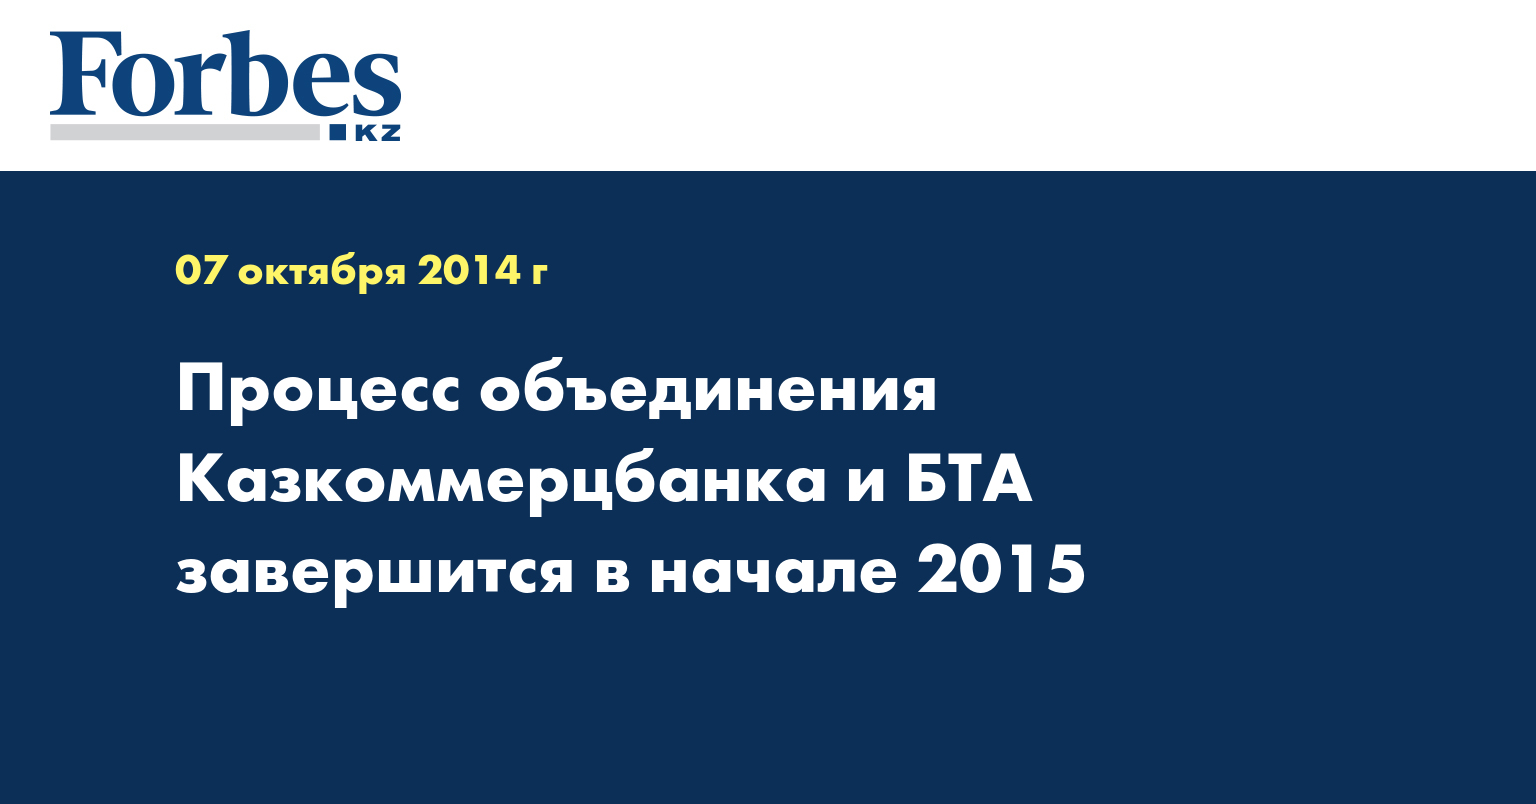 Процесс объединения Казкоммерцбанка и БТА завершится в начале 2015